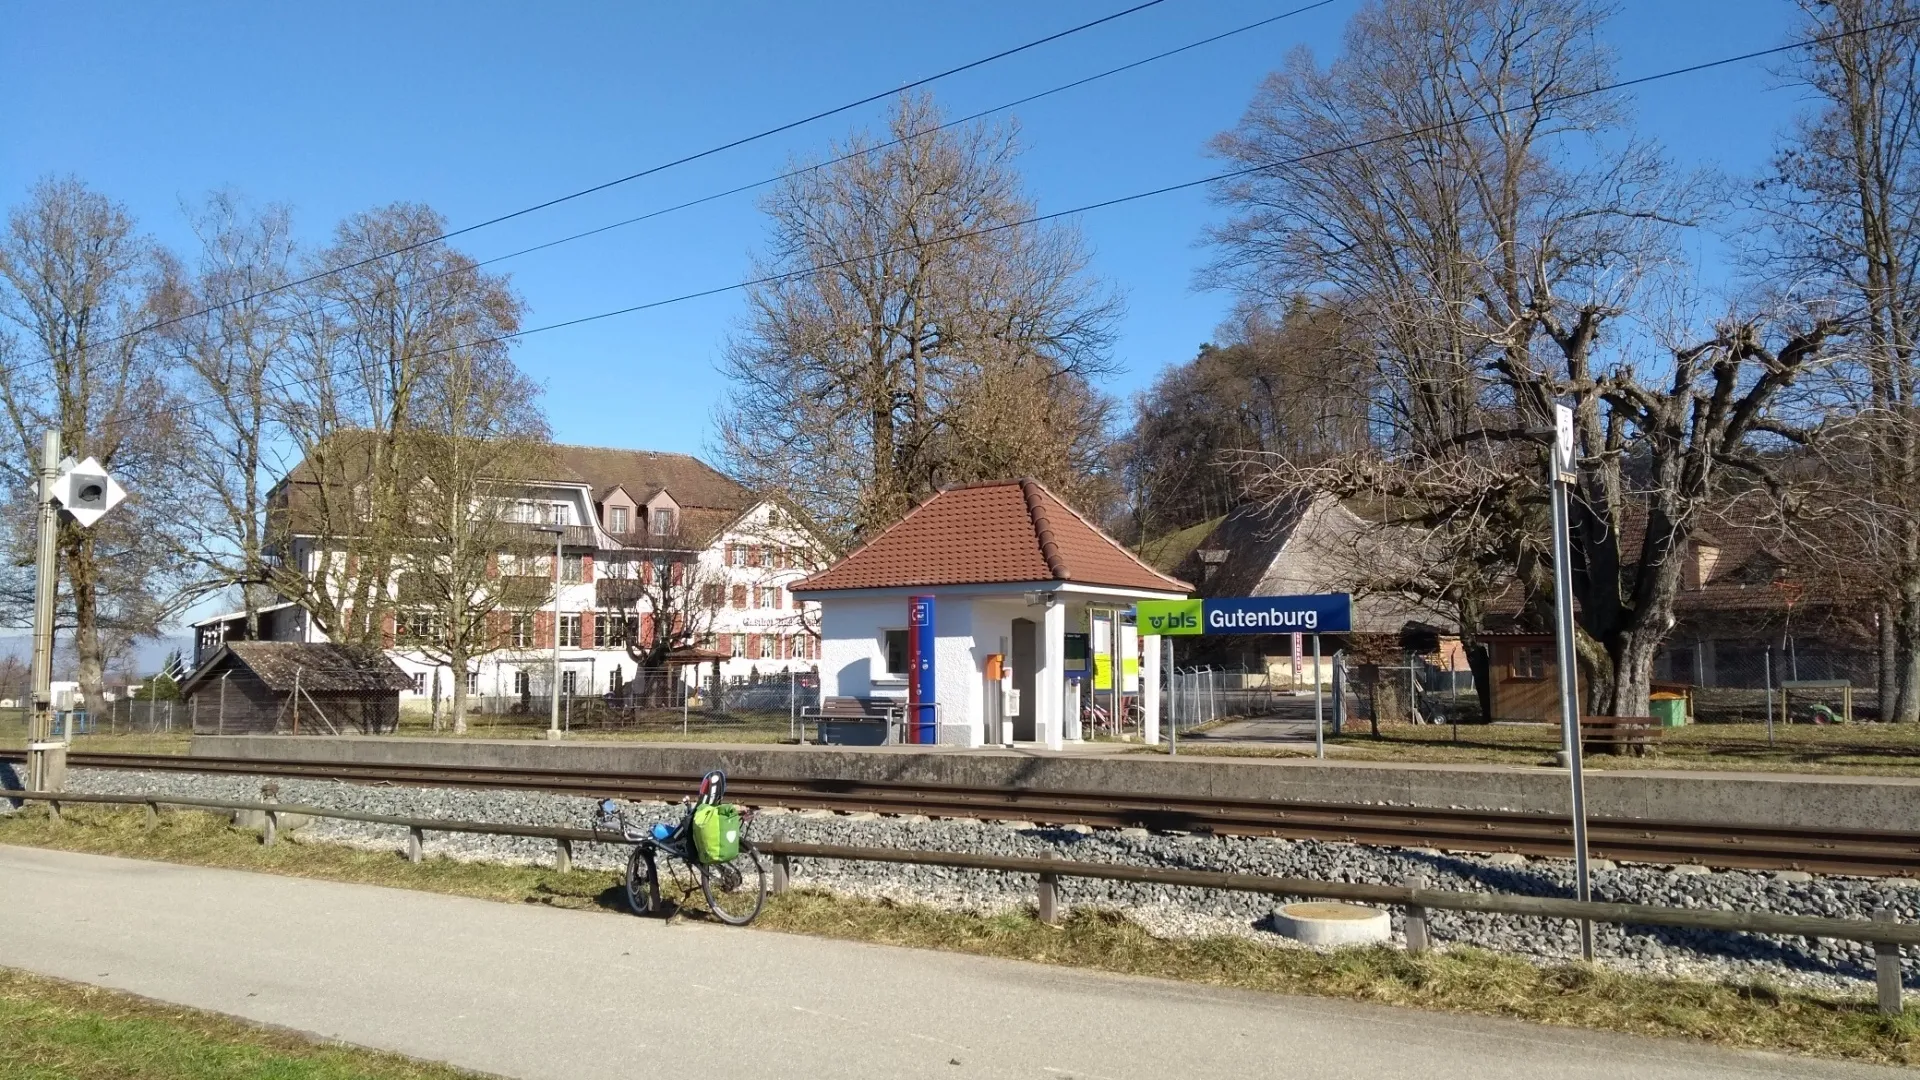 Photo showing: Gutenburg railway station in Madiswil, Switzerland.